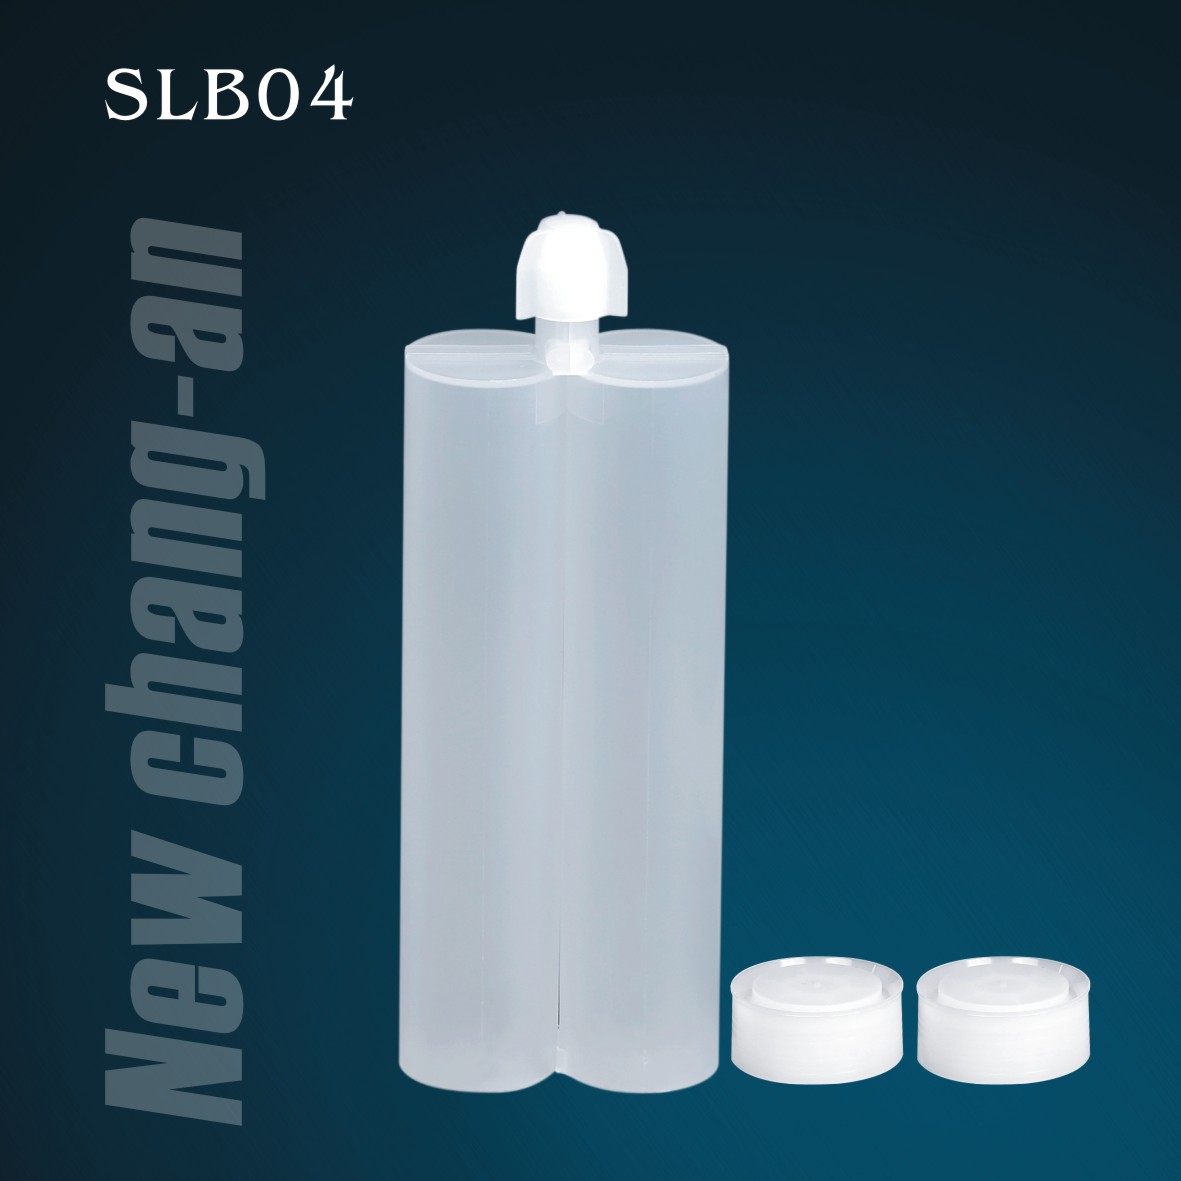 320 ml: 320 ml Zweikomponenten-Doppelkartusche für Packung A+B Klebstoff SLB04